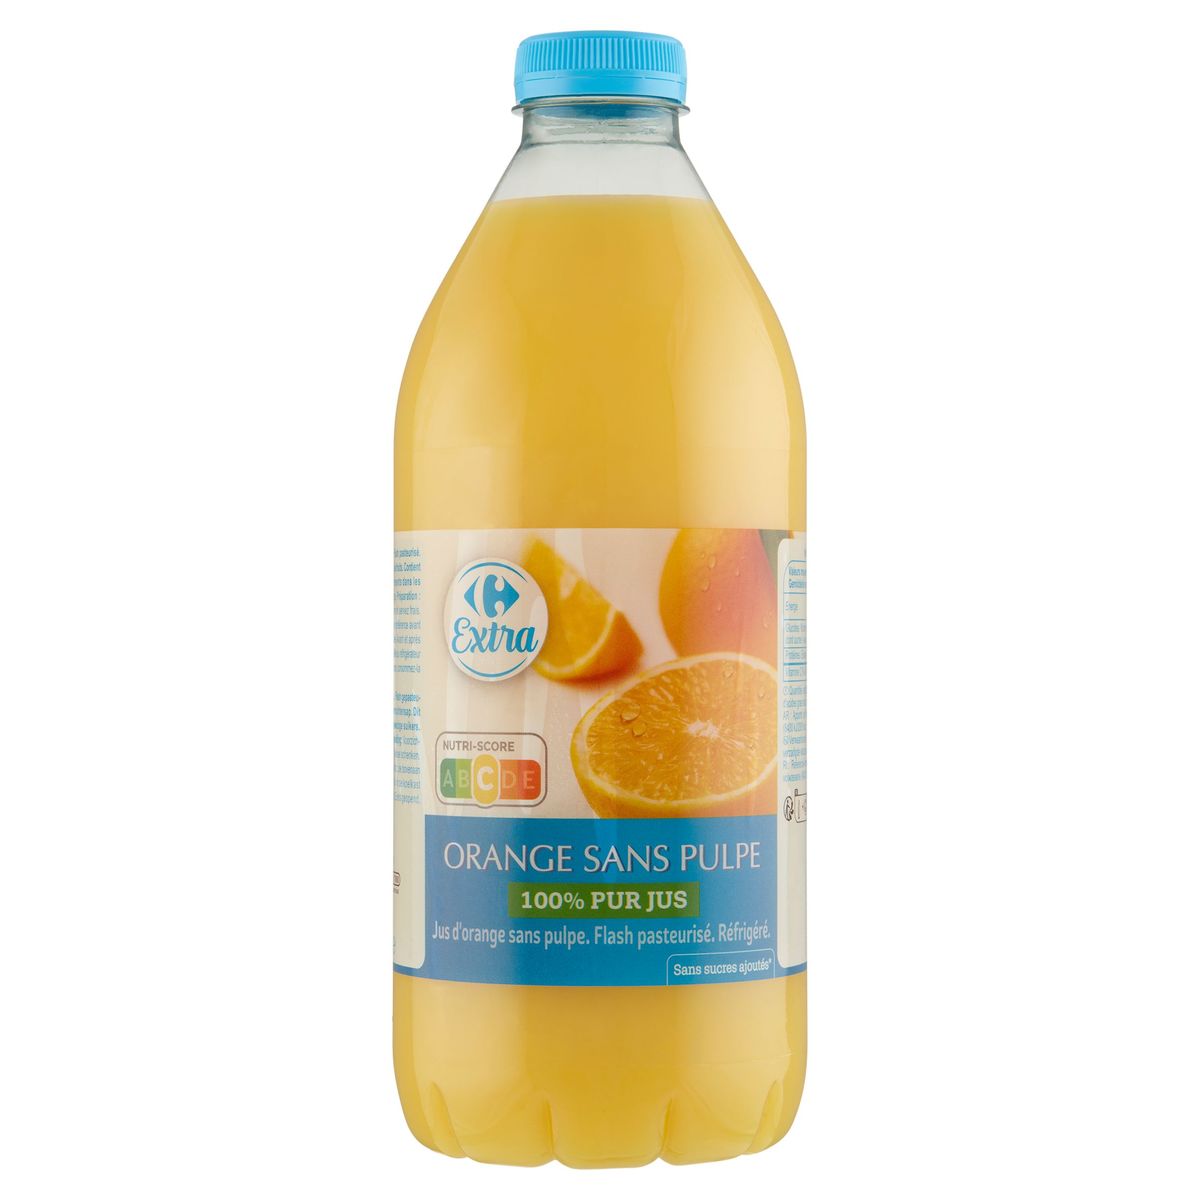 Carrefour Extra 100% Pur Jus Orange sans Pulpe 1.5 L